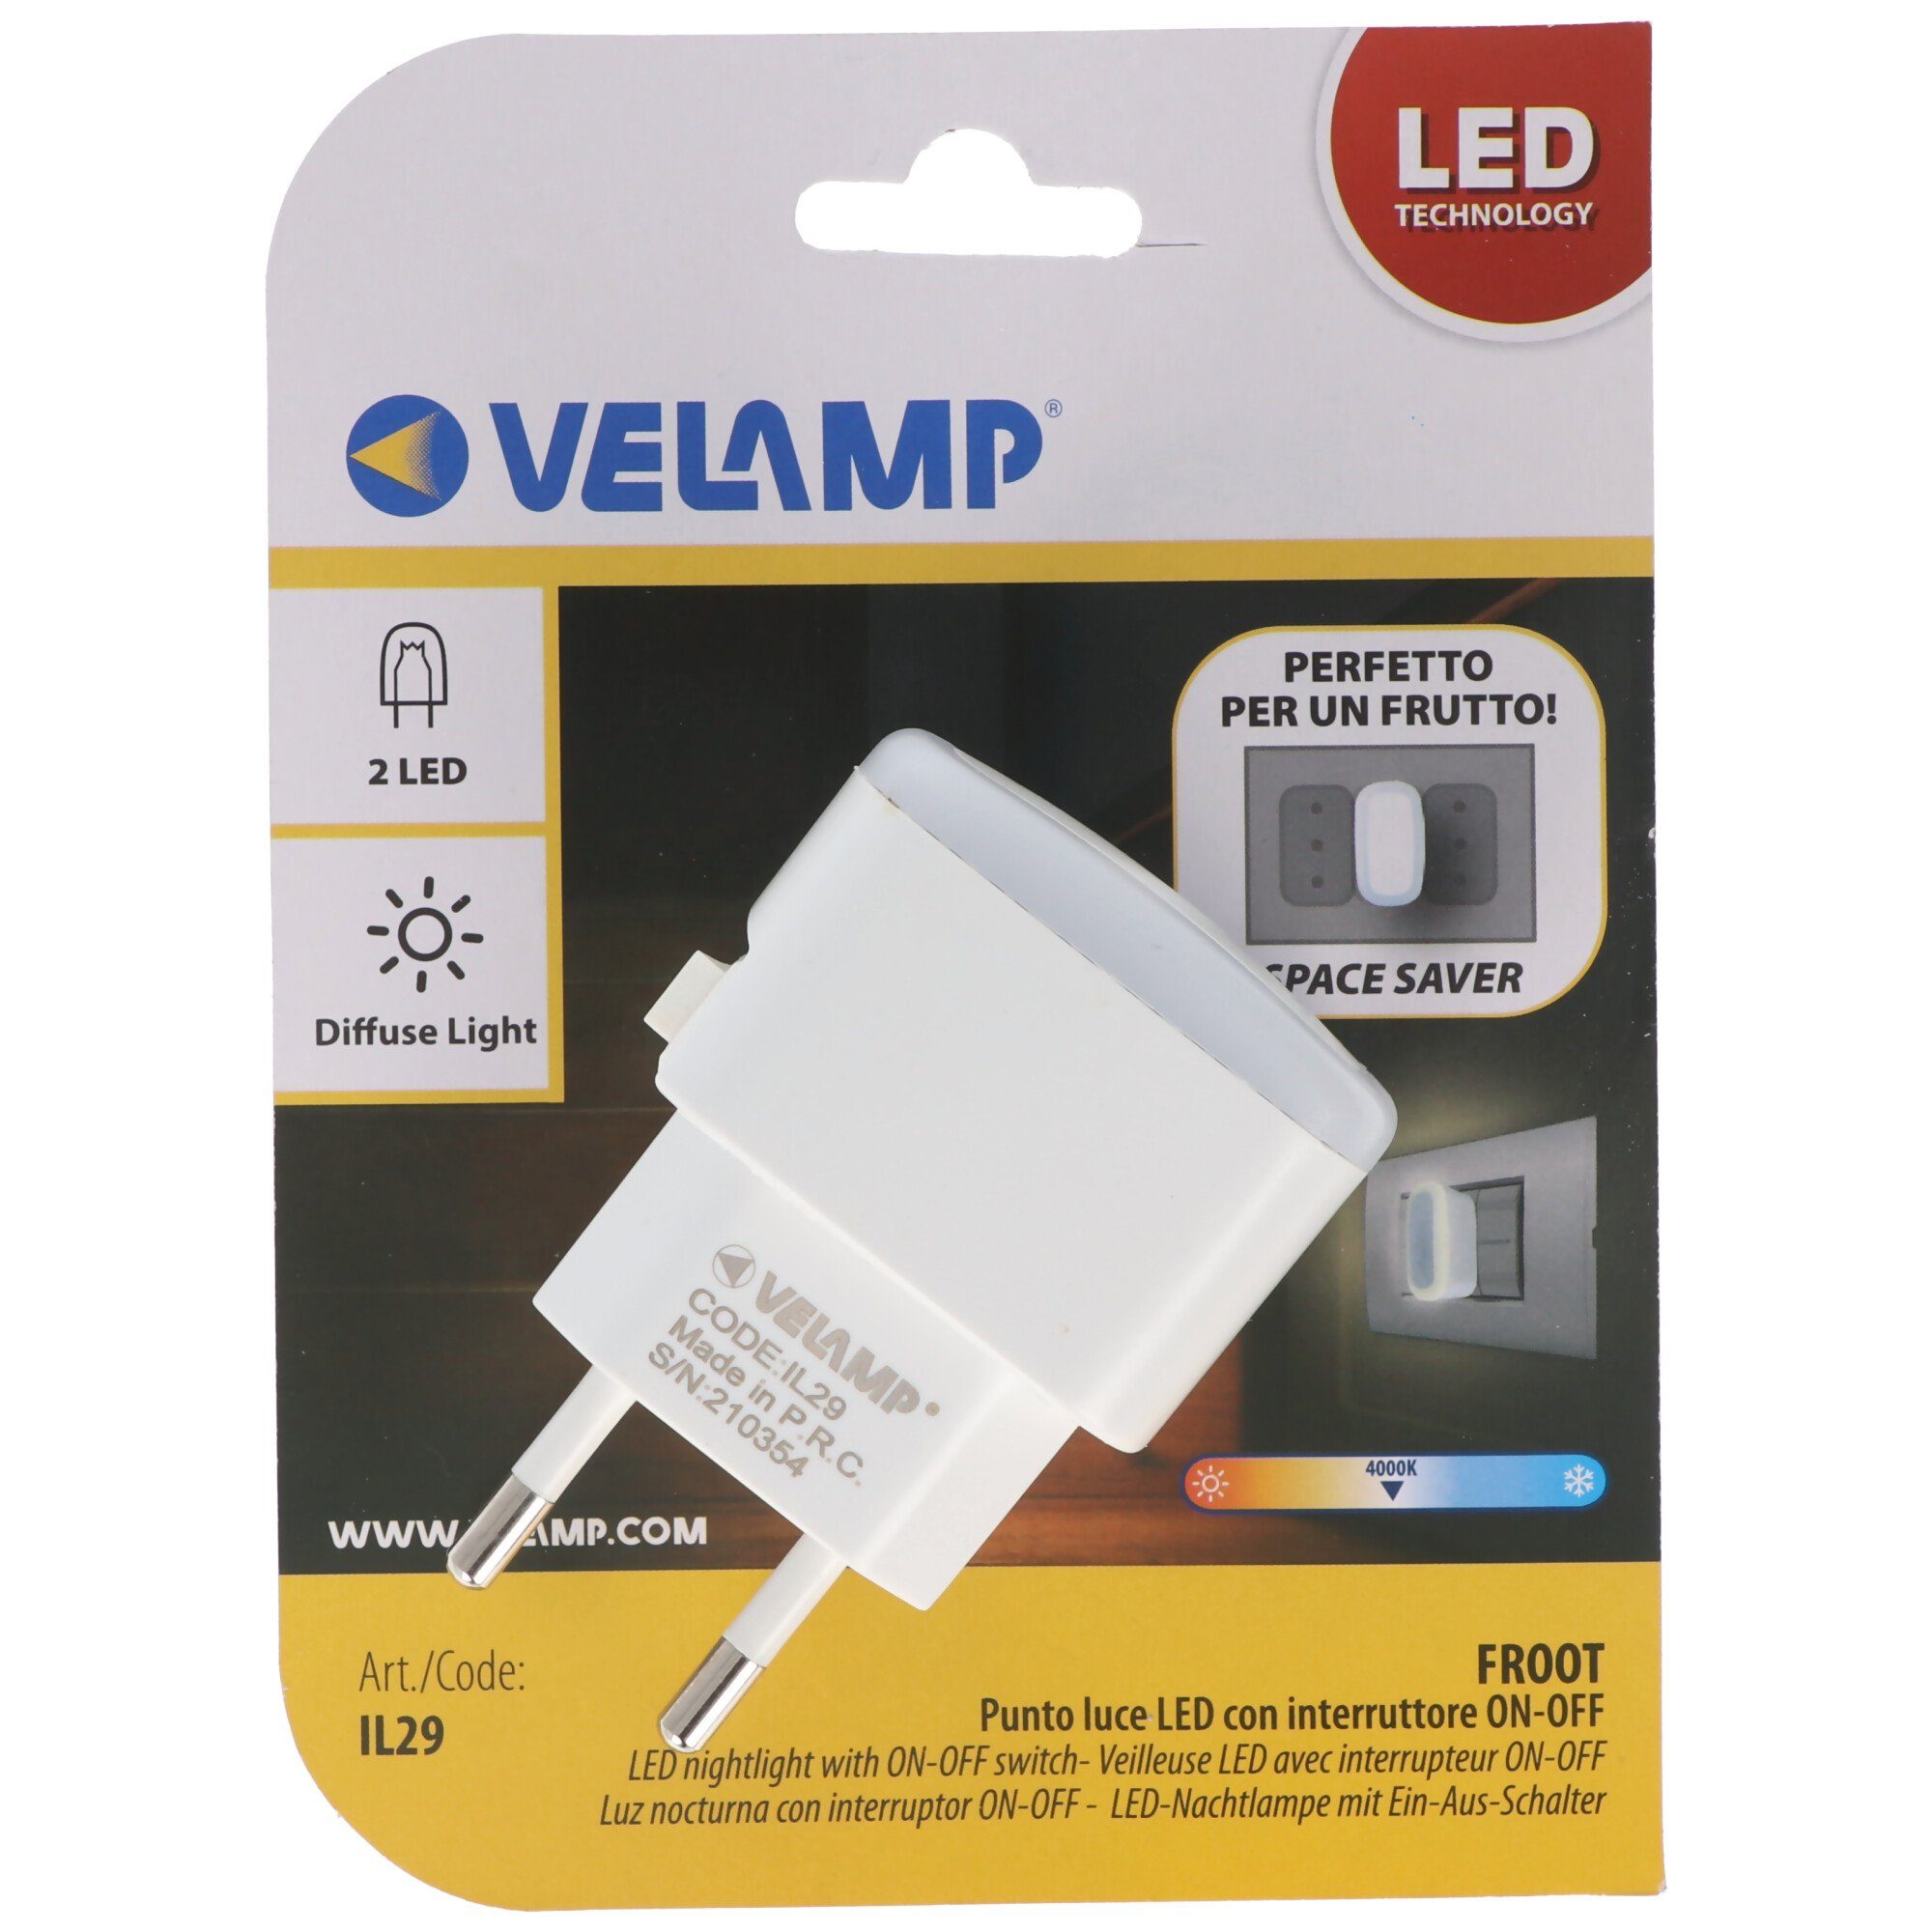 extra Velamp kompakt, ver FROOT, Nachtlicht LED-Nachtlicht LED EIN/AUS-Schalter, mit Velamp